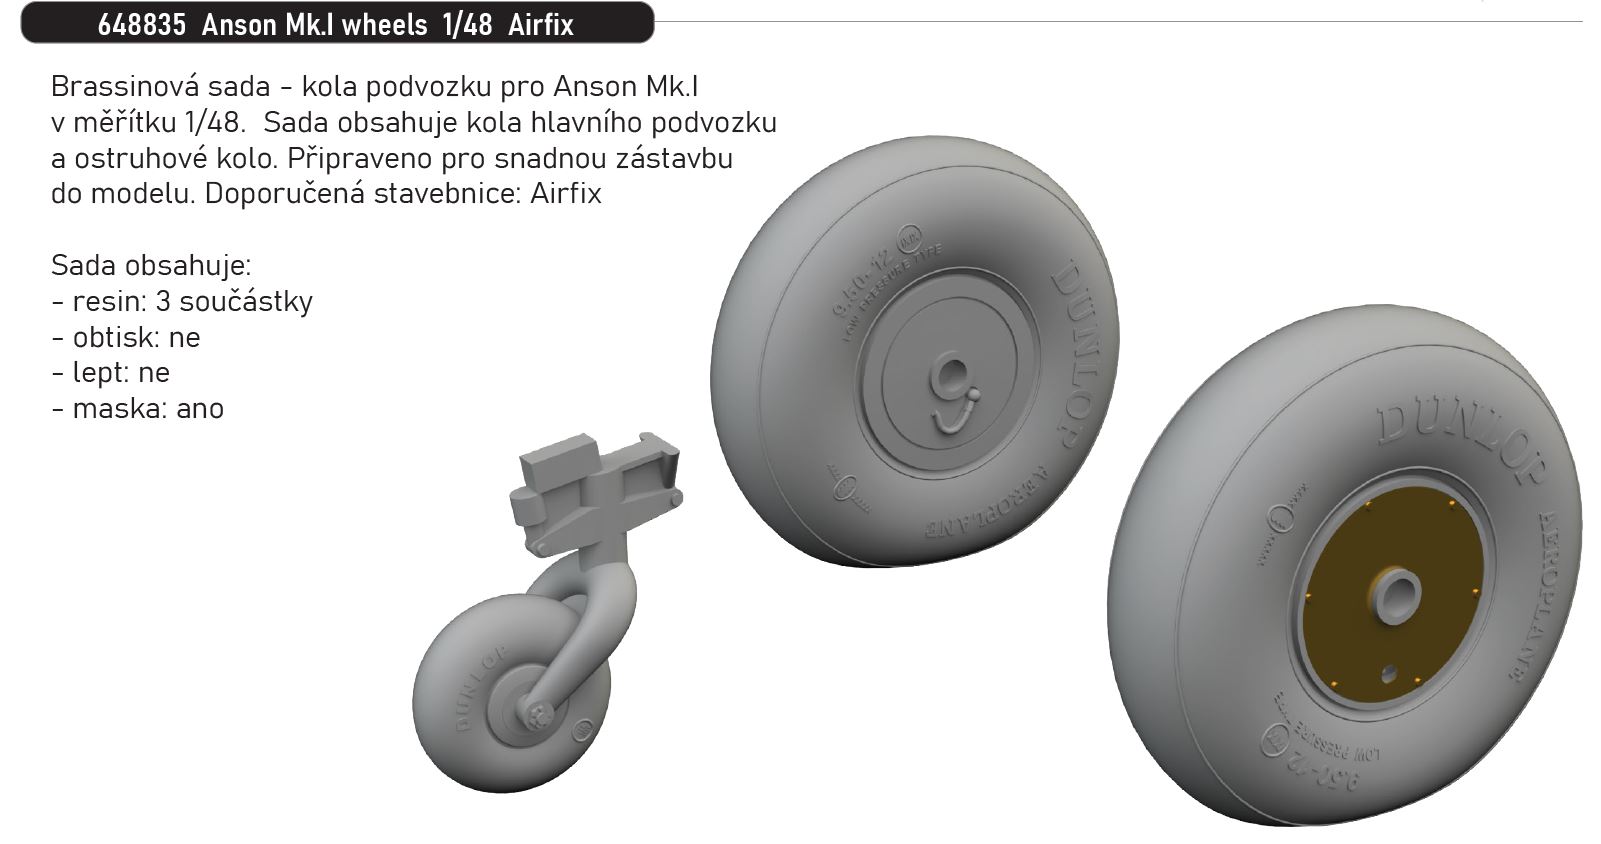 1/48 Anson Mk.I wheels (AIRFIX)